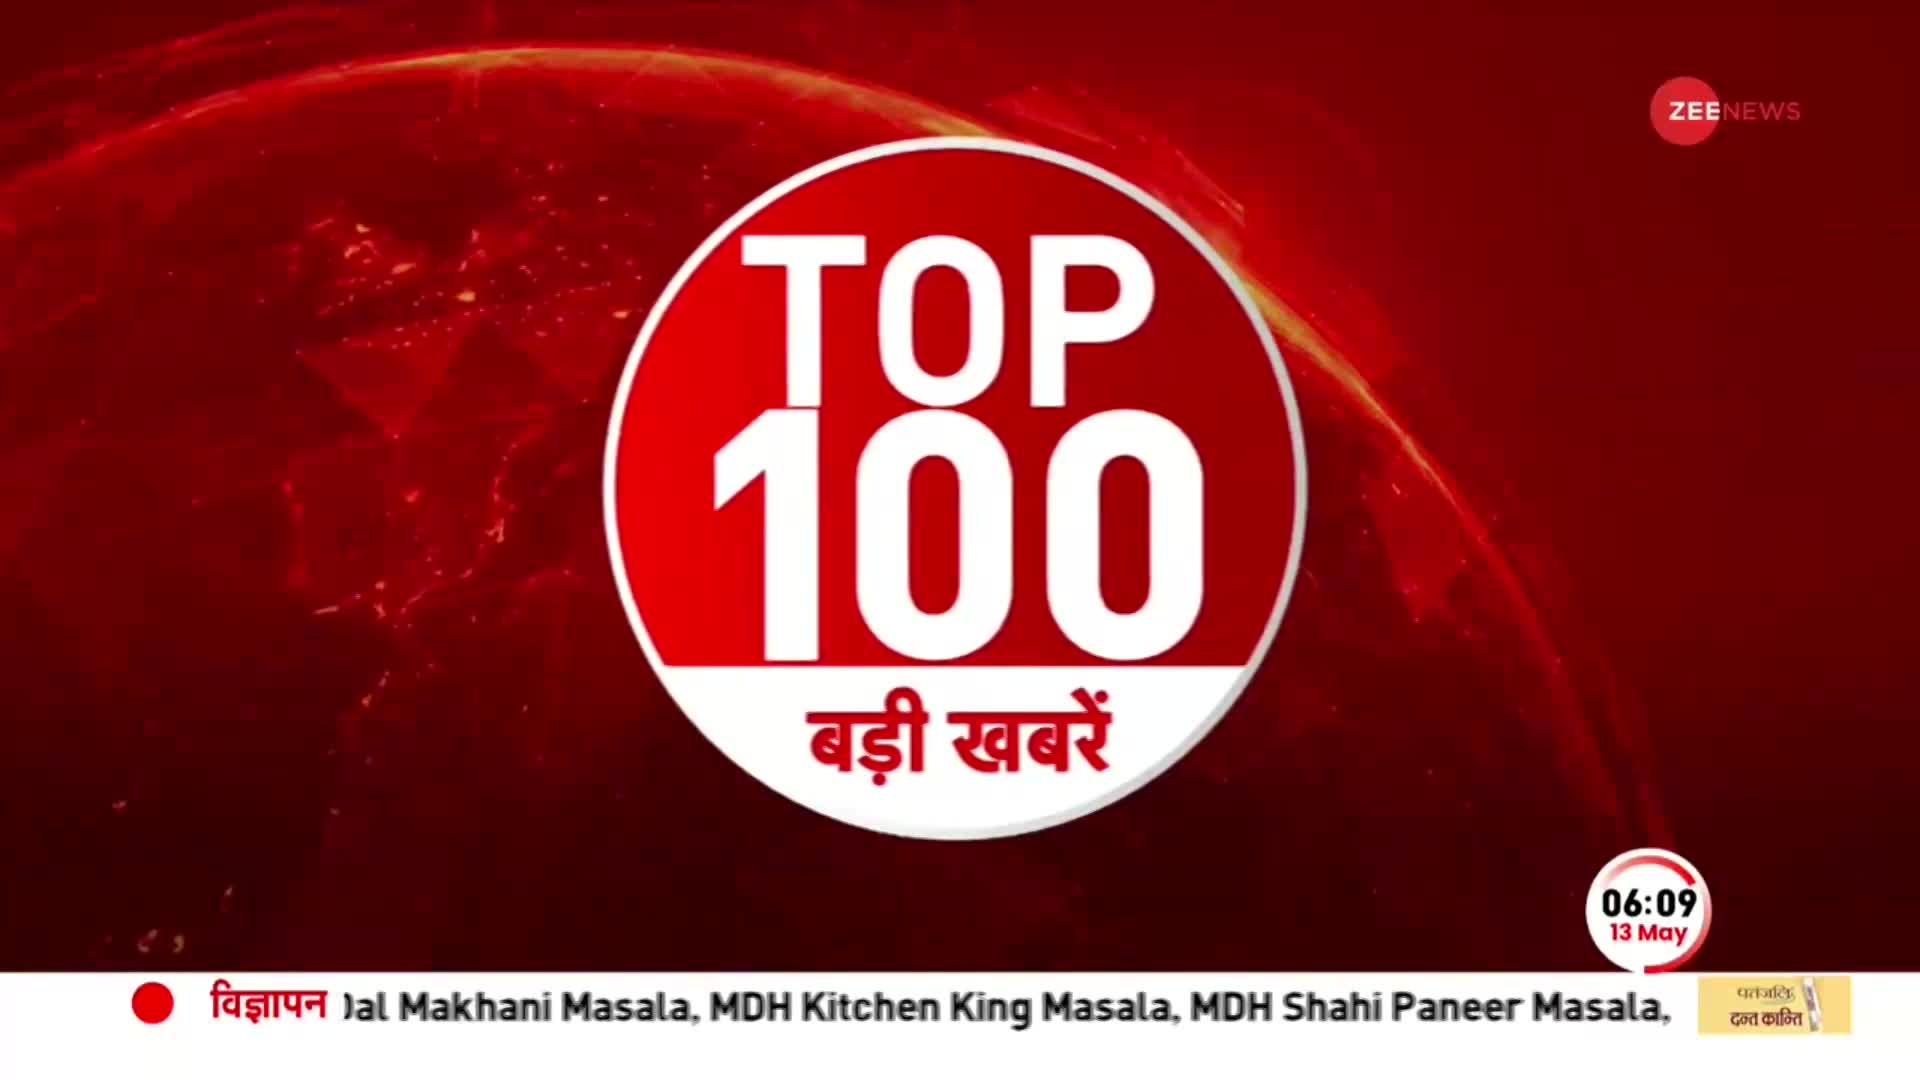 TOP 100: सुबह की 100 बड़ी खबरें सुपरफास्ट अंदाज में | Karnataka  Election Result | Pakistan Crisis